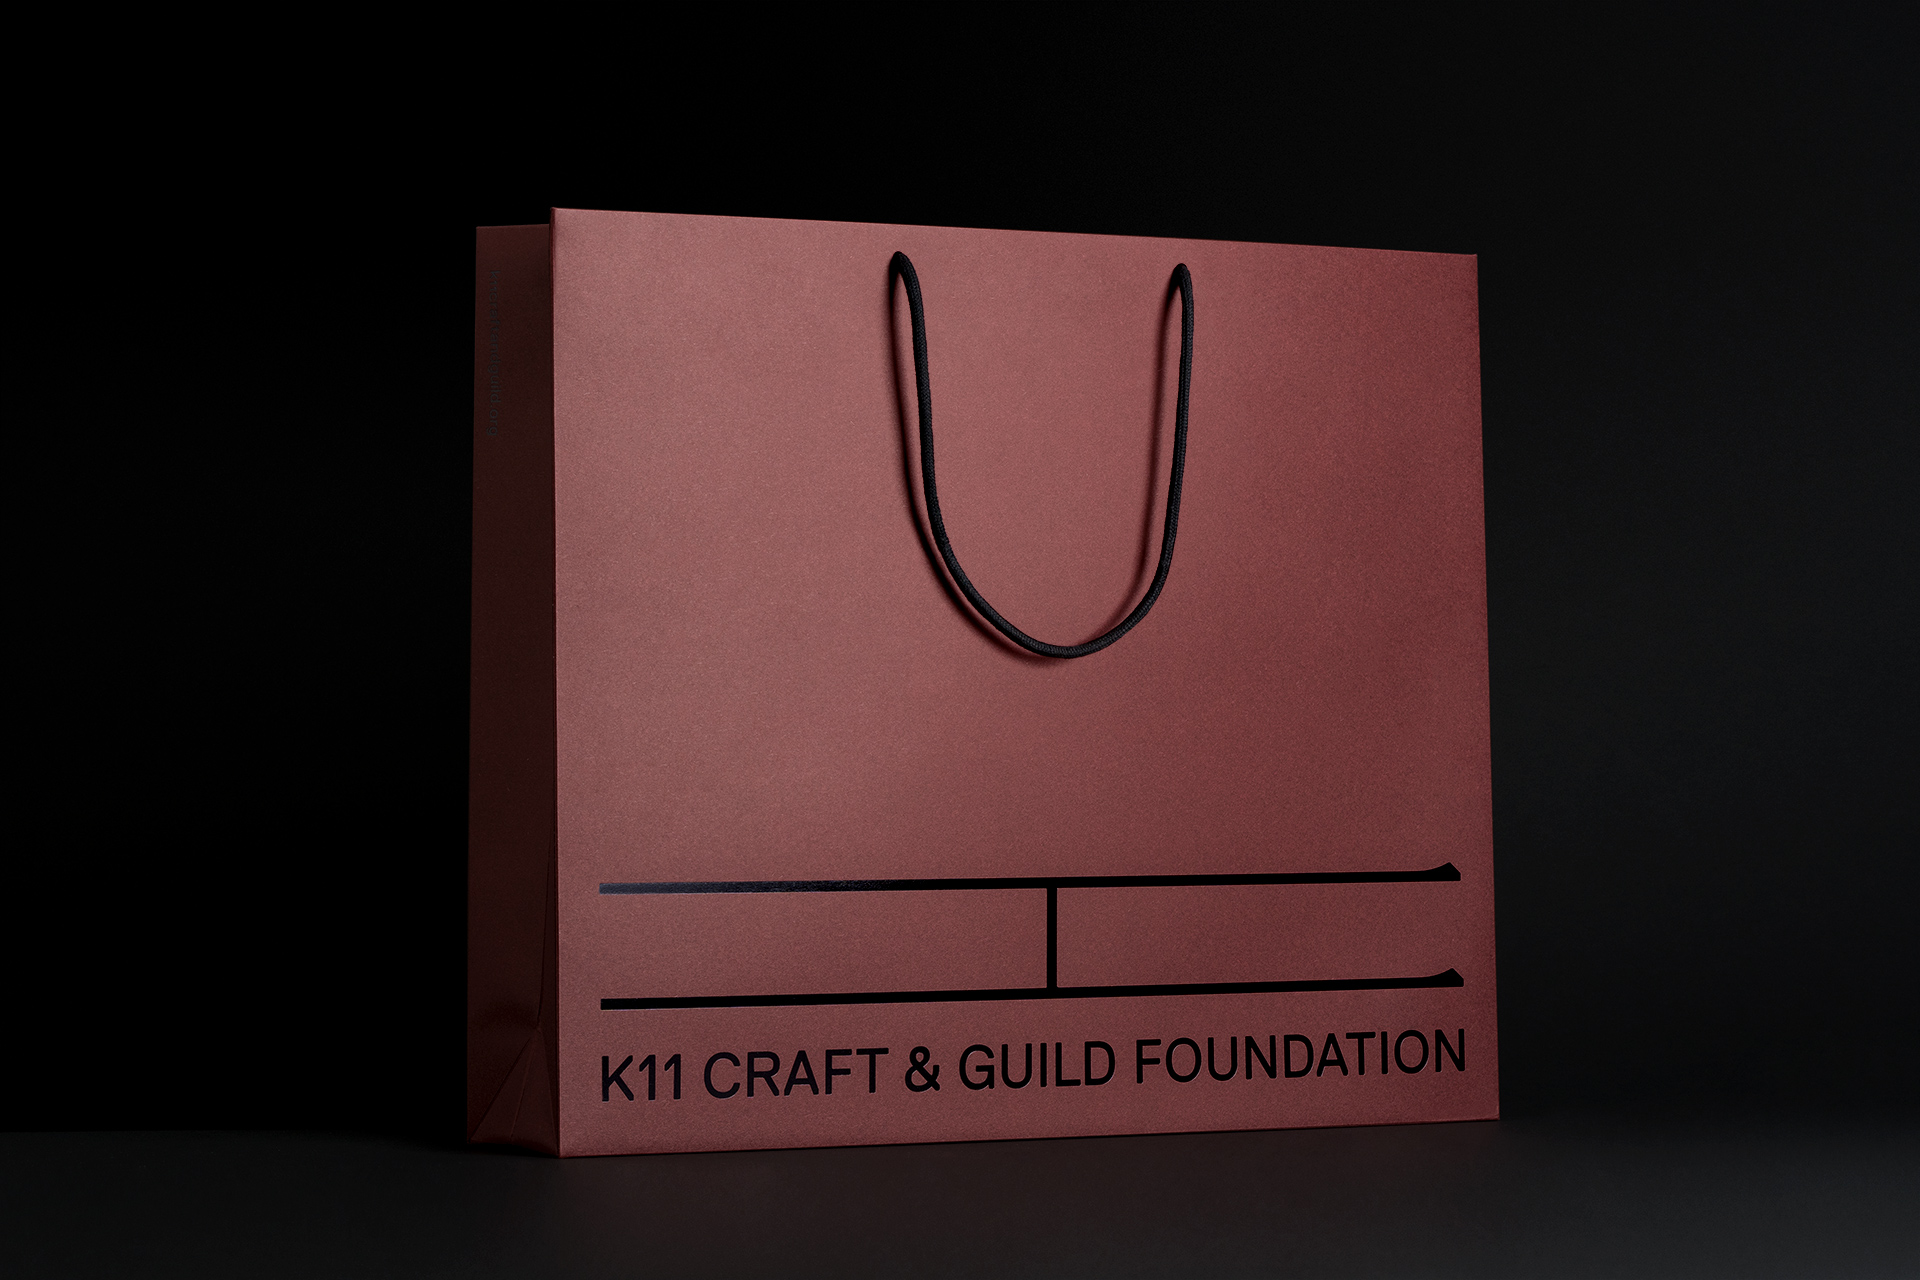 mejores-logos-2021-2022-k11-craft-guild-foundation-0107